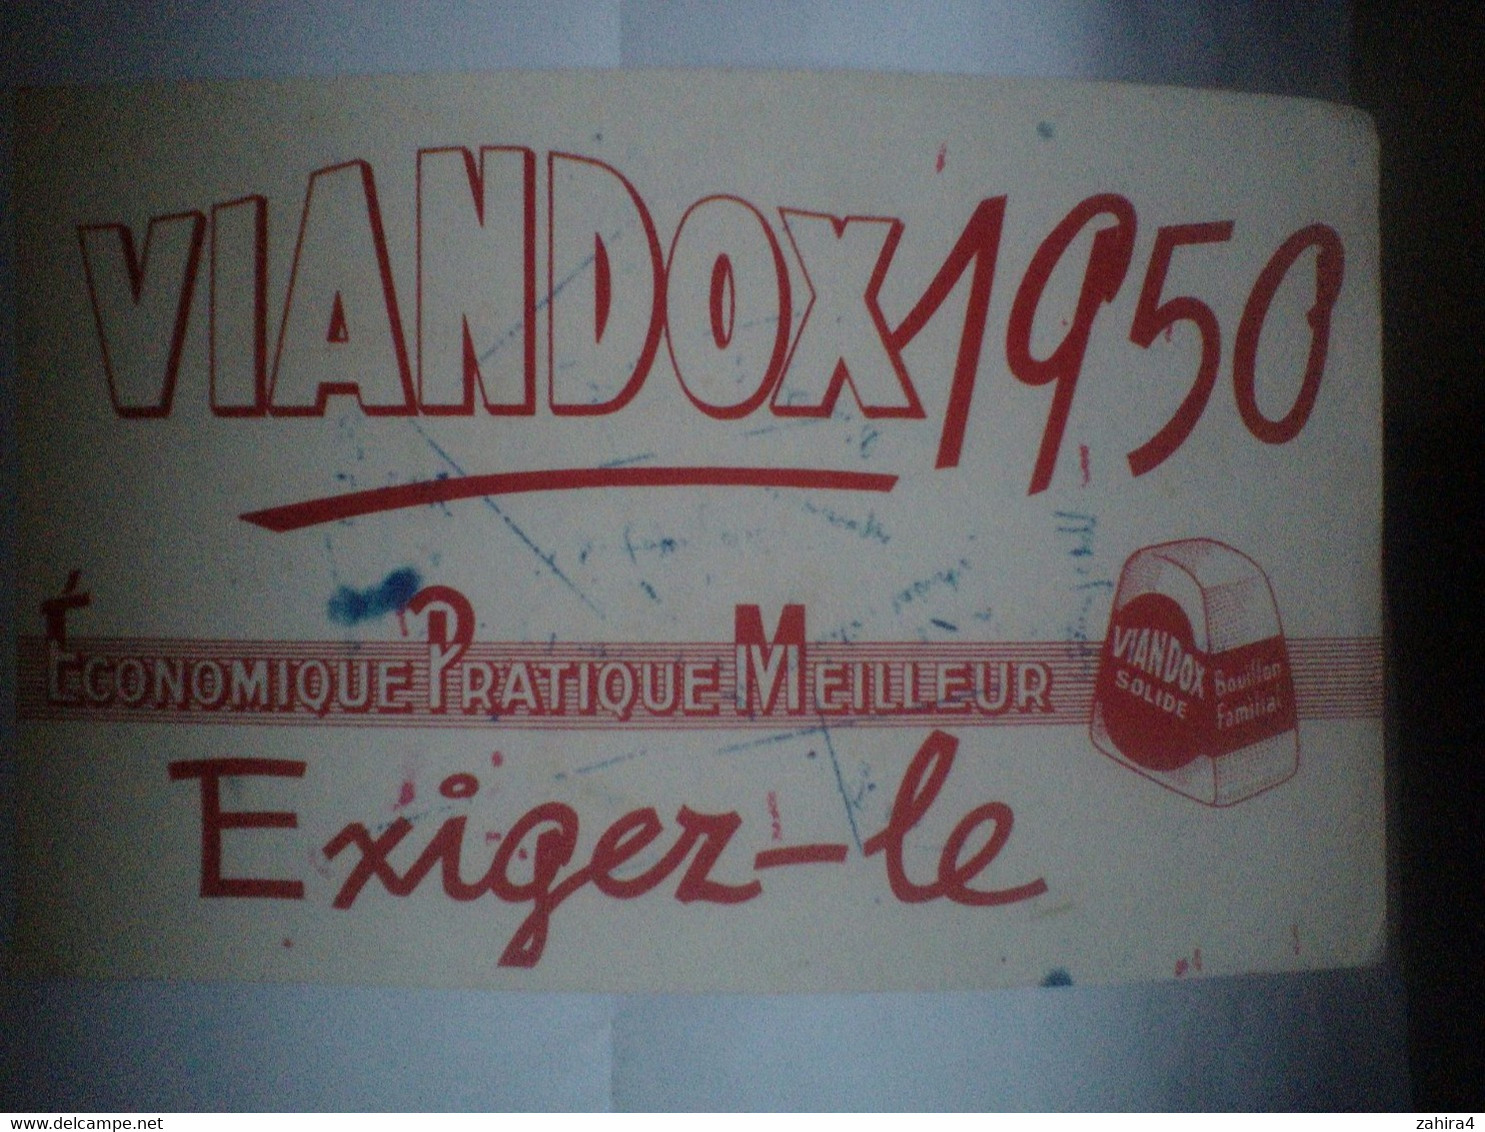 Viandox 1950 - Economique Pratique Meilleur - Exiger-le - Bouillon Familial - Suppen & Sossen